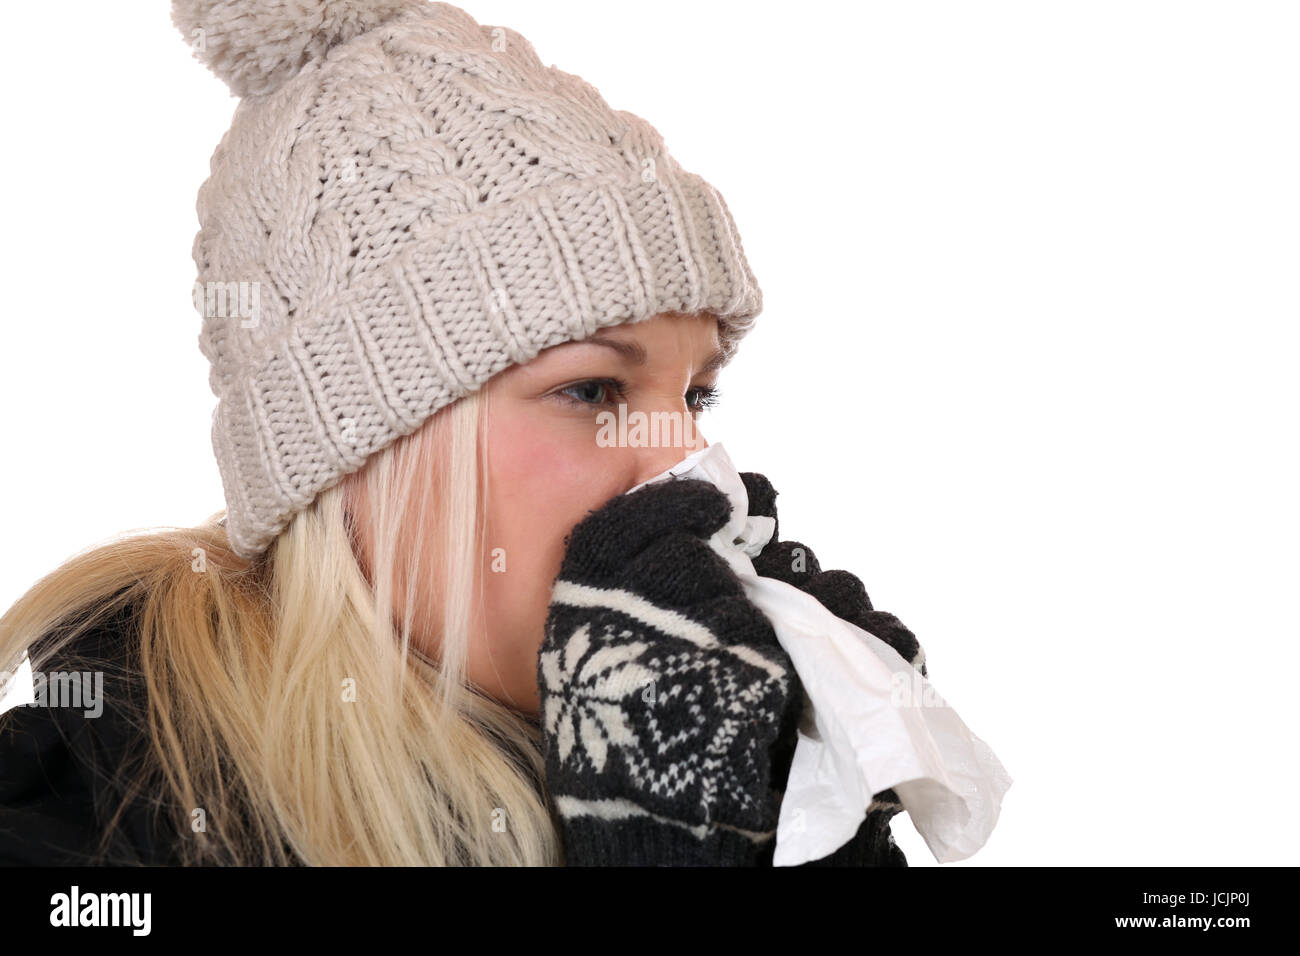 Junge Frau mit Taschentuch krank ist hat eine Erkältung oder Grippe, isoliert vor einem weissen Hintergrund Foto Stock